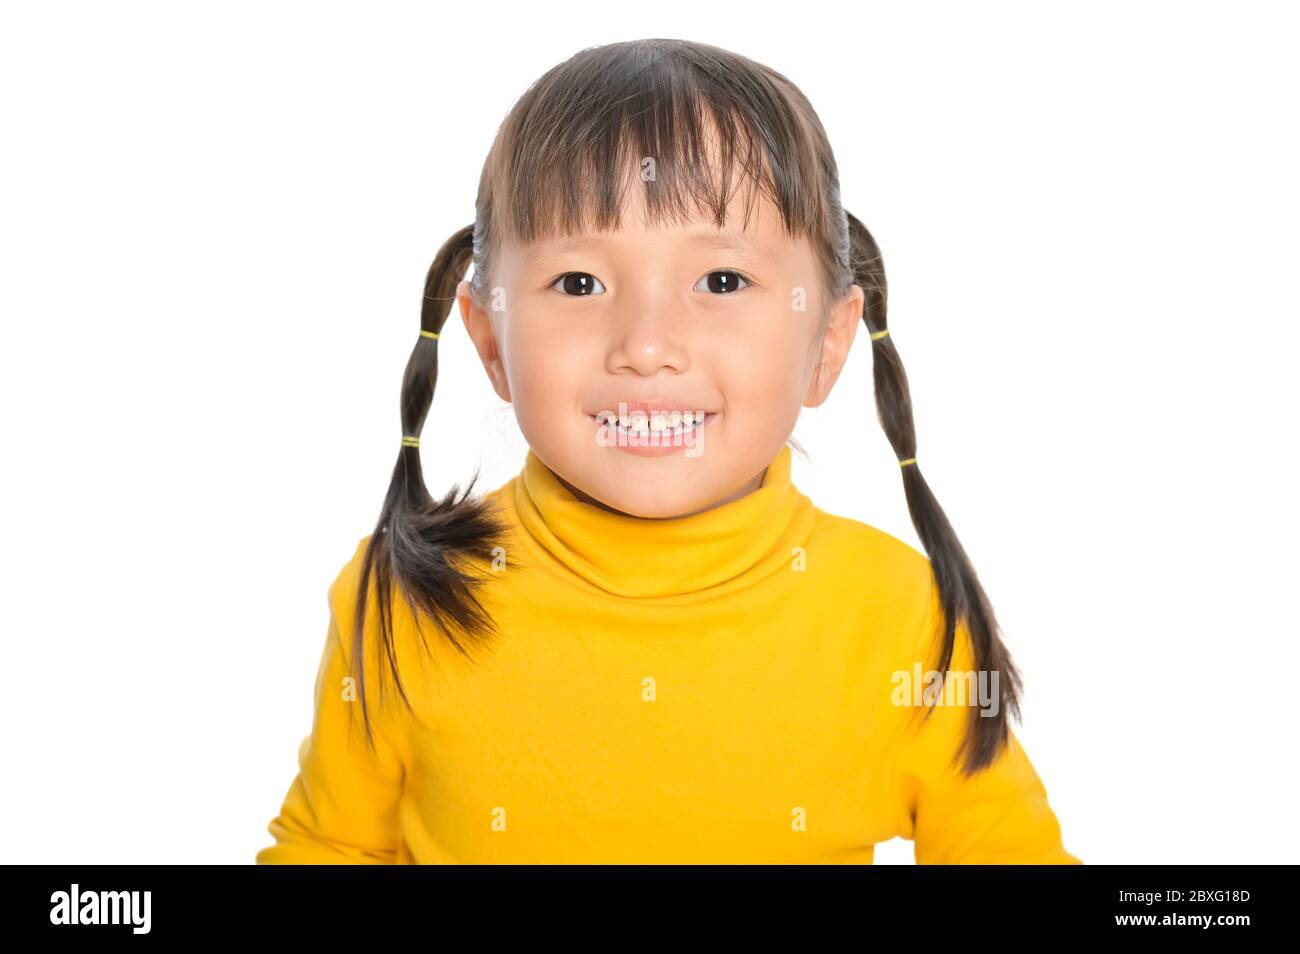 Asiatische lächelnd kleines Mädchen Lächeln und Blick auf die Kamera Freude positive Emotionen und glückliche Kindheit Konzept auf weißem Hintergrund Stockfoto